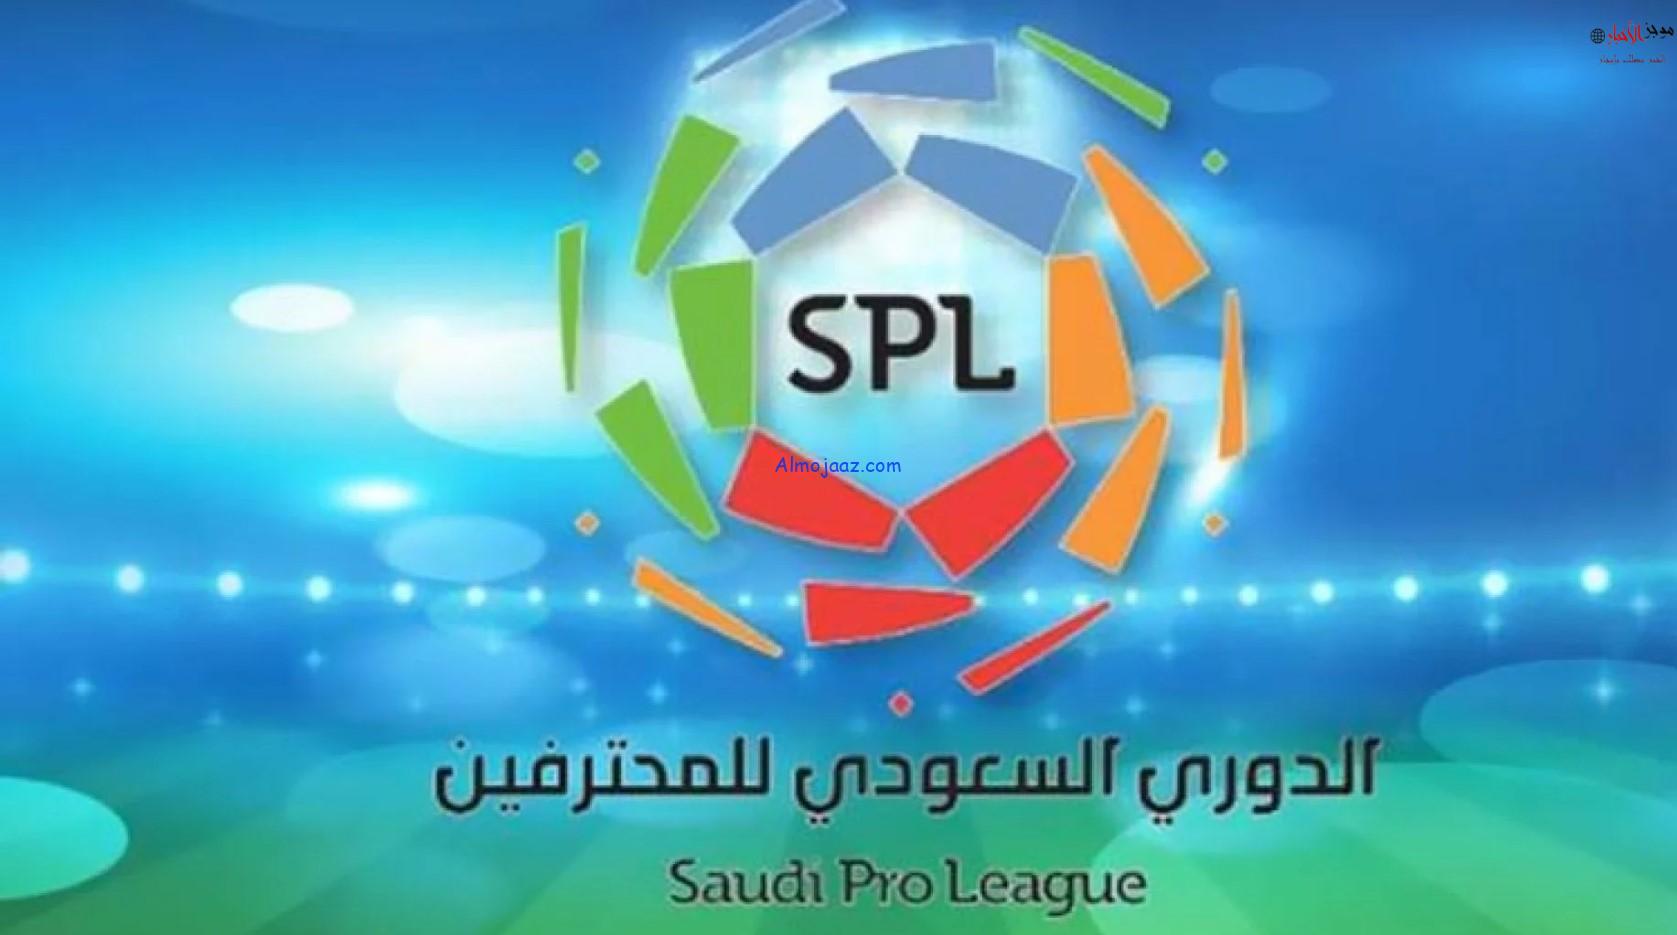 توقيت انطلاق الدوري السعودي للموسم الجديد 2022-2023